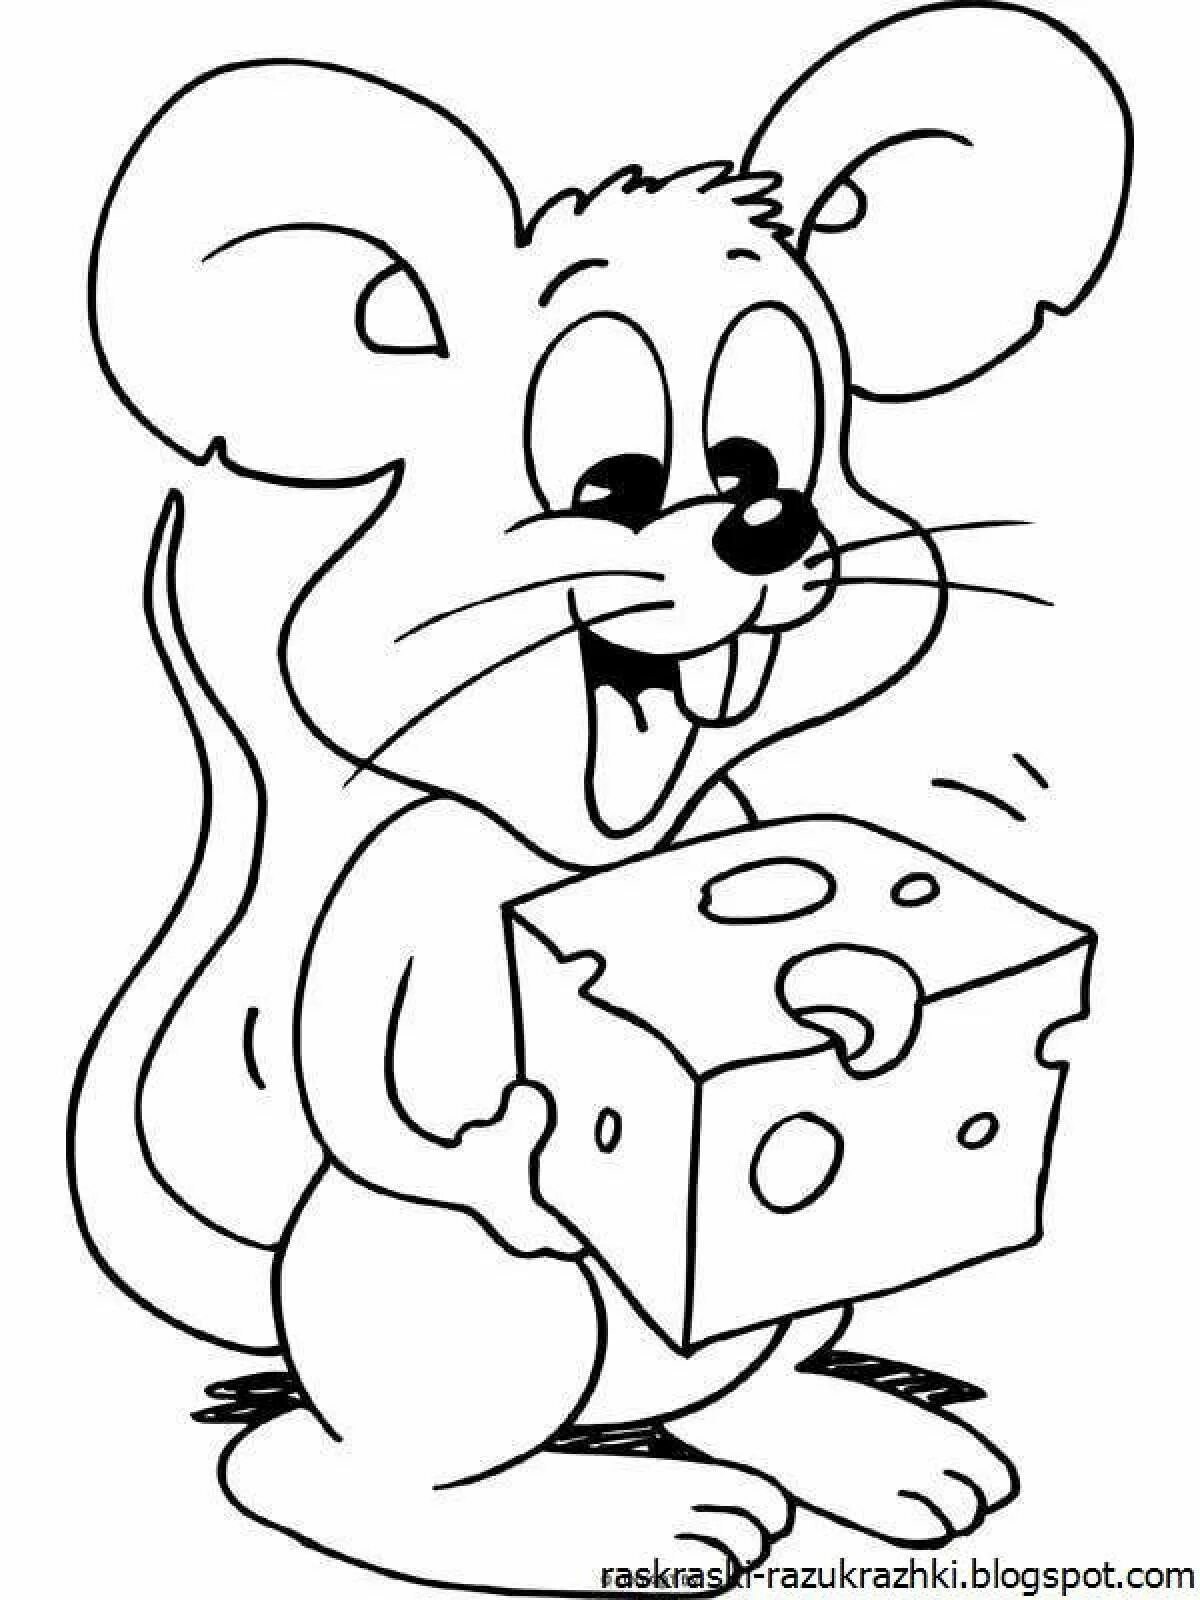 Раскраска мышка. Раскраска мышонок. Мышь раскраска для детей. Мышка раскраска для детей. Раскраска мышь распечатать